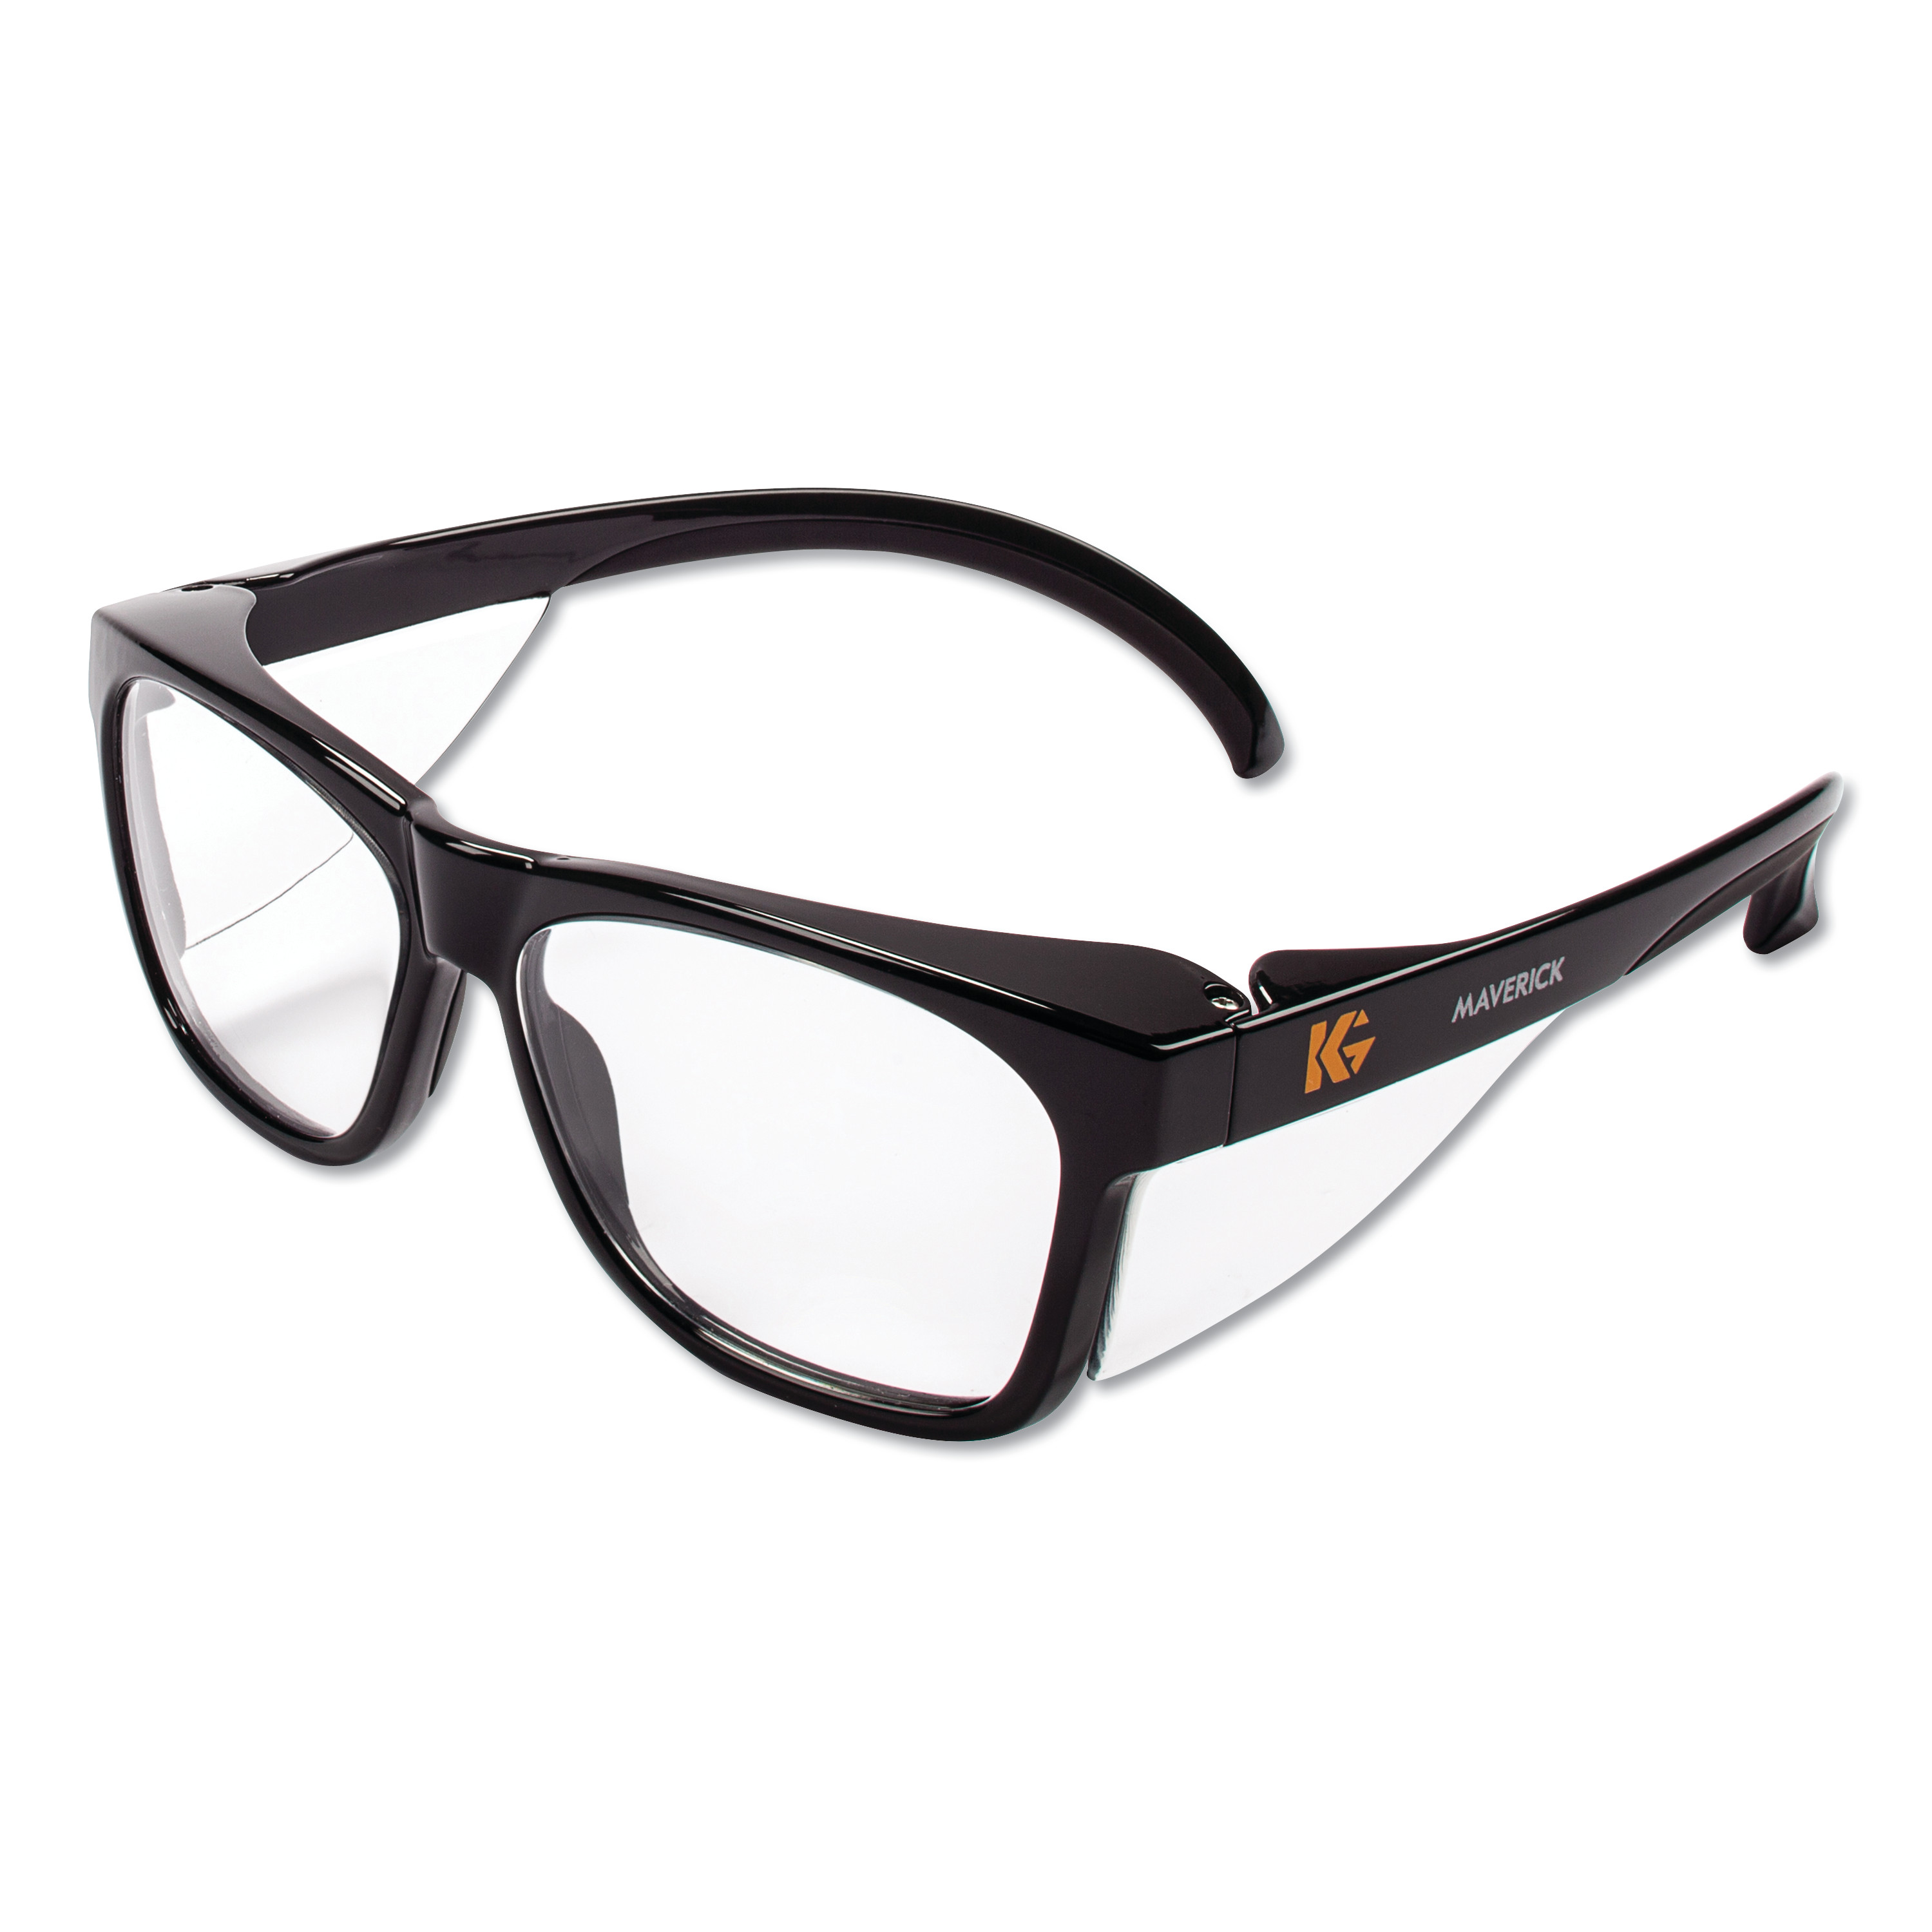  KleenGuard 49309 Maverick Safety Glasses, Black, Polycarbonate Frame, Clear Lens (KCC49309) 